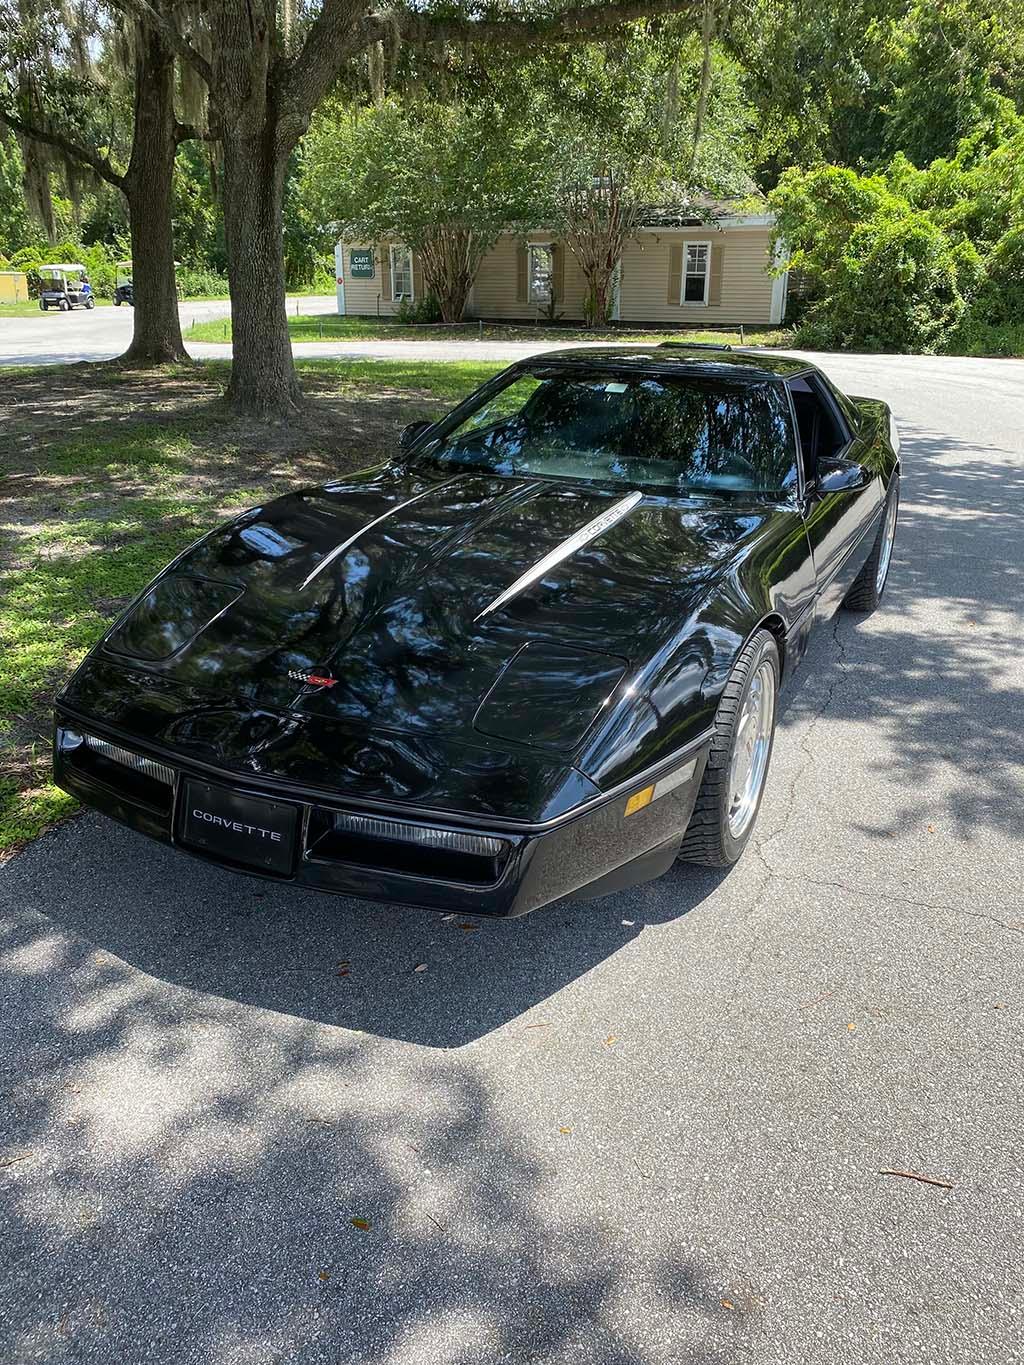 1988 corvette for sale